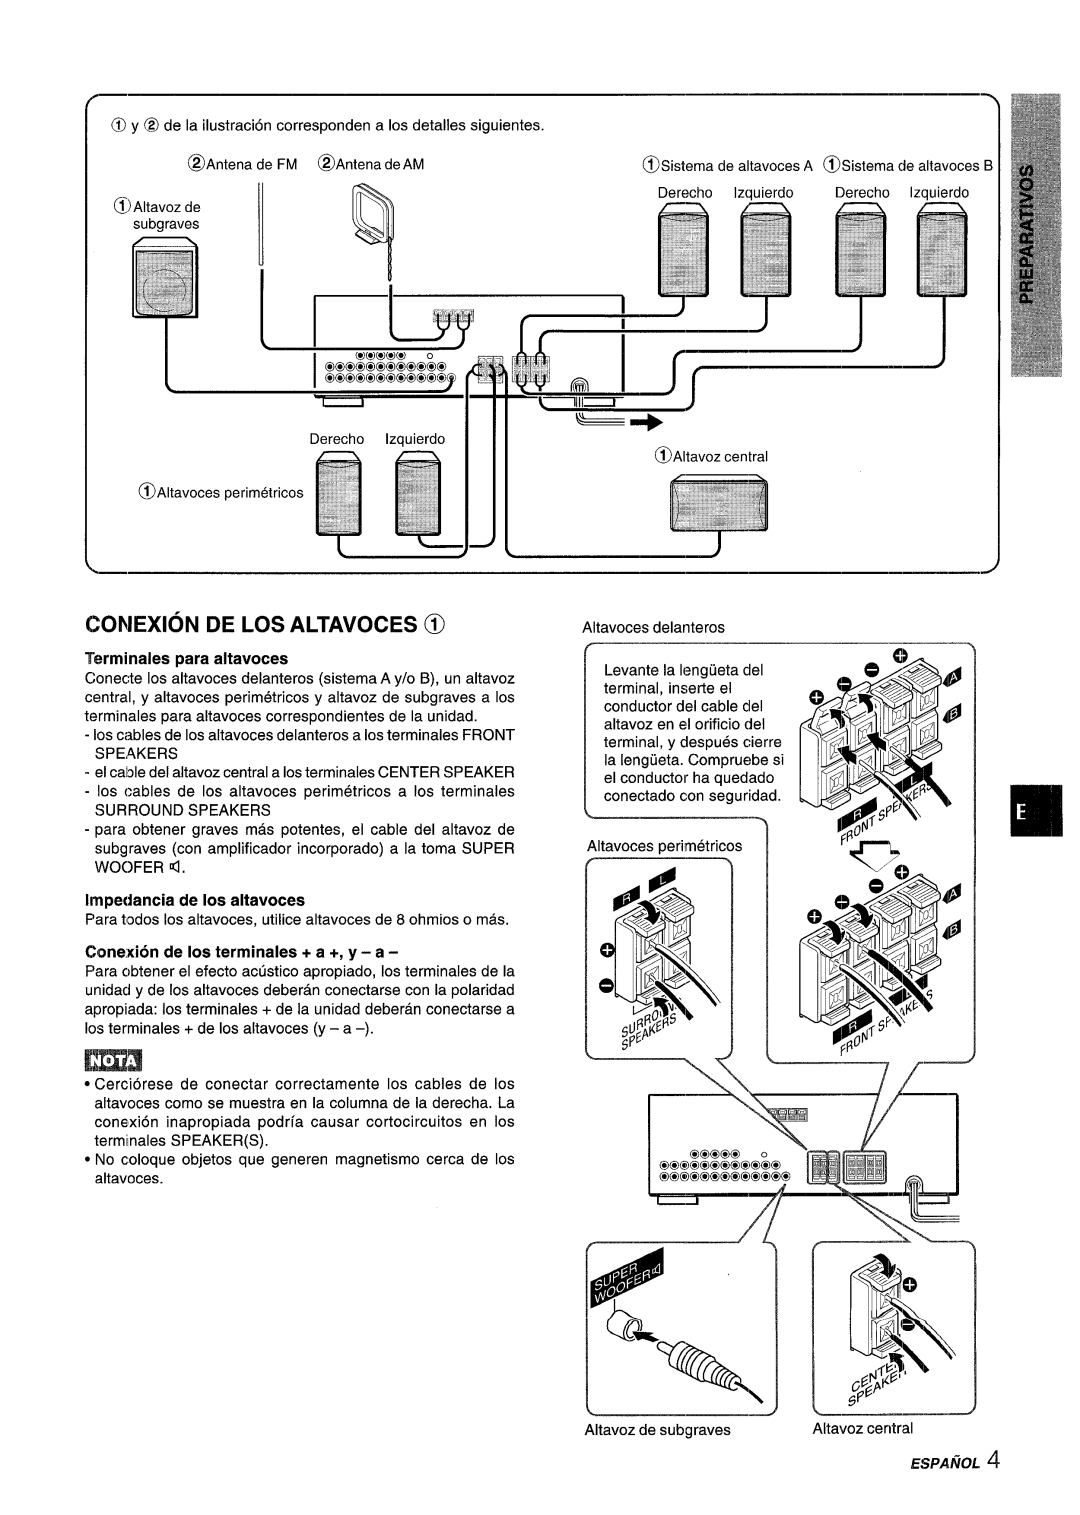 Aiwa AV-D55 manual “J-5, Conexion De Los Altavoces @, Terminals para altavoces, Irnpedancia de Ios altavoces 